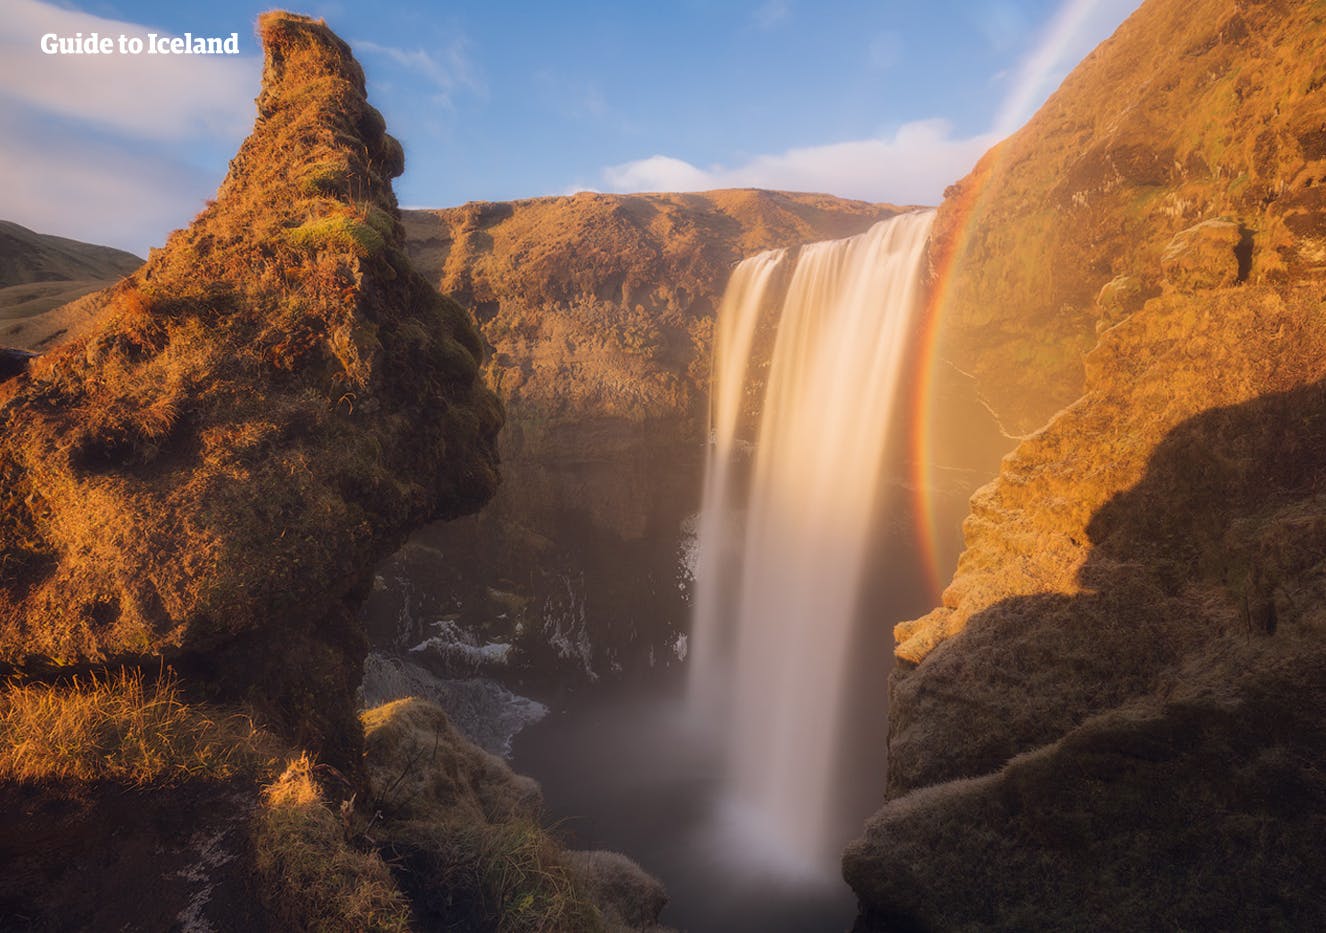 Capta una gran fotografía frente a la cascada de Skógafoss en la Costa Sur.